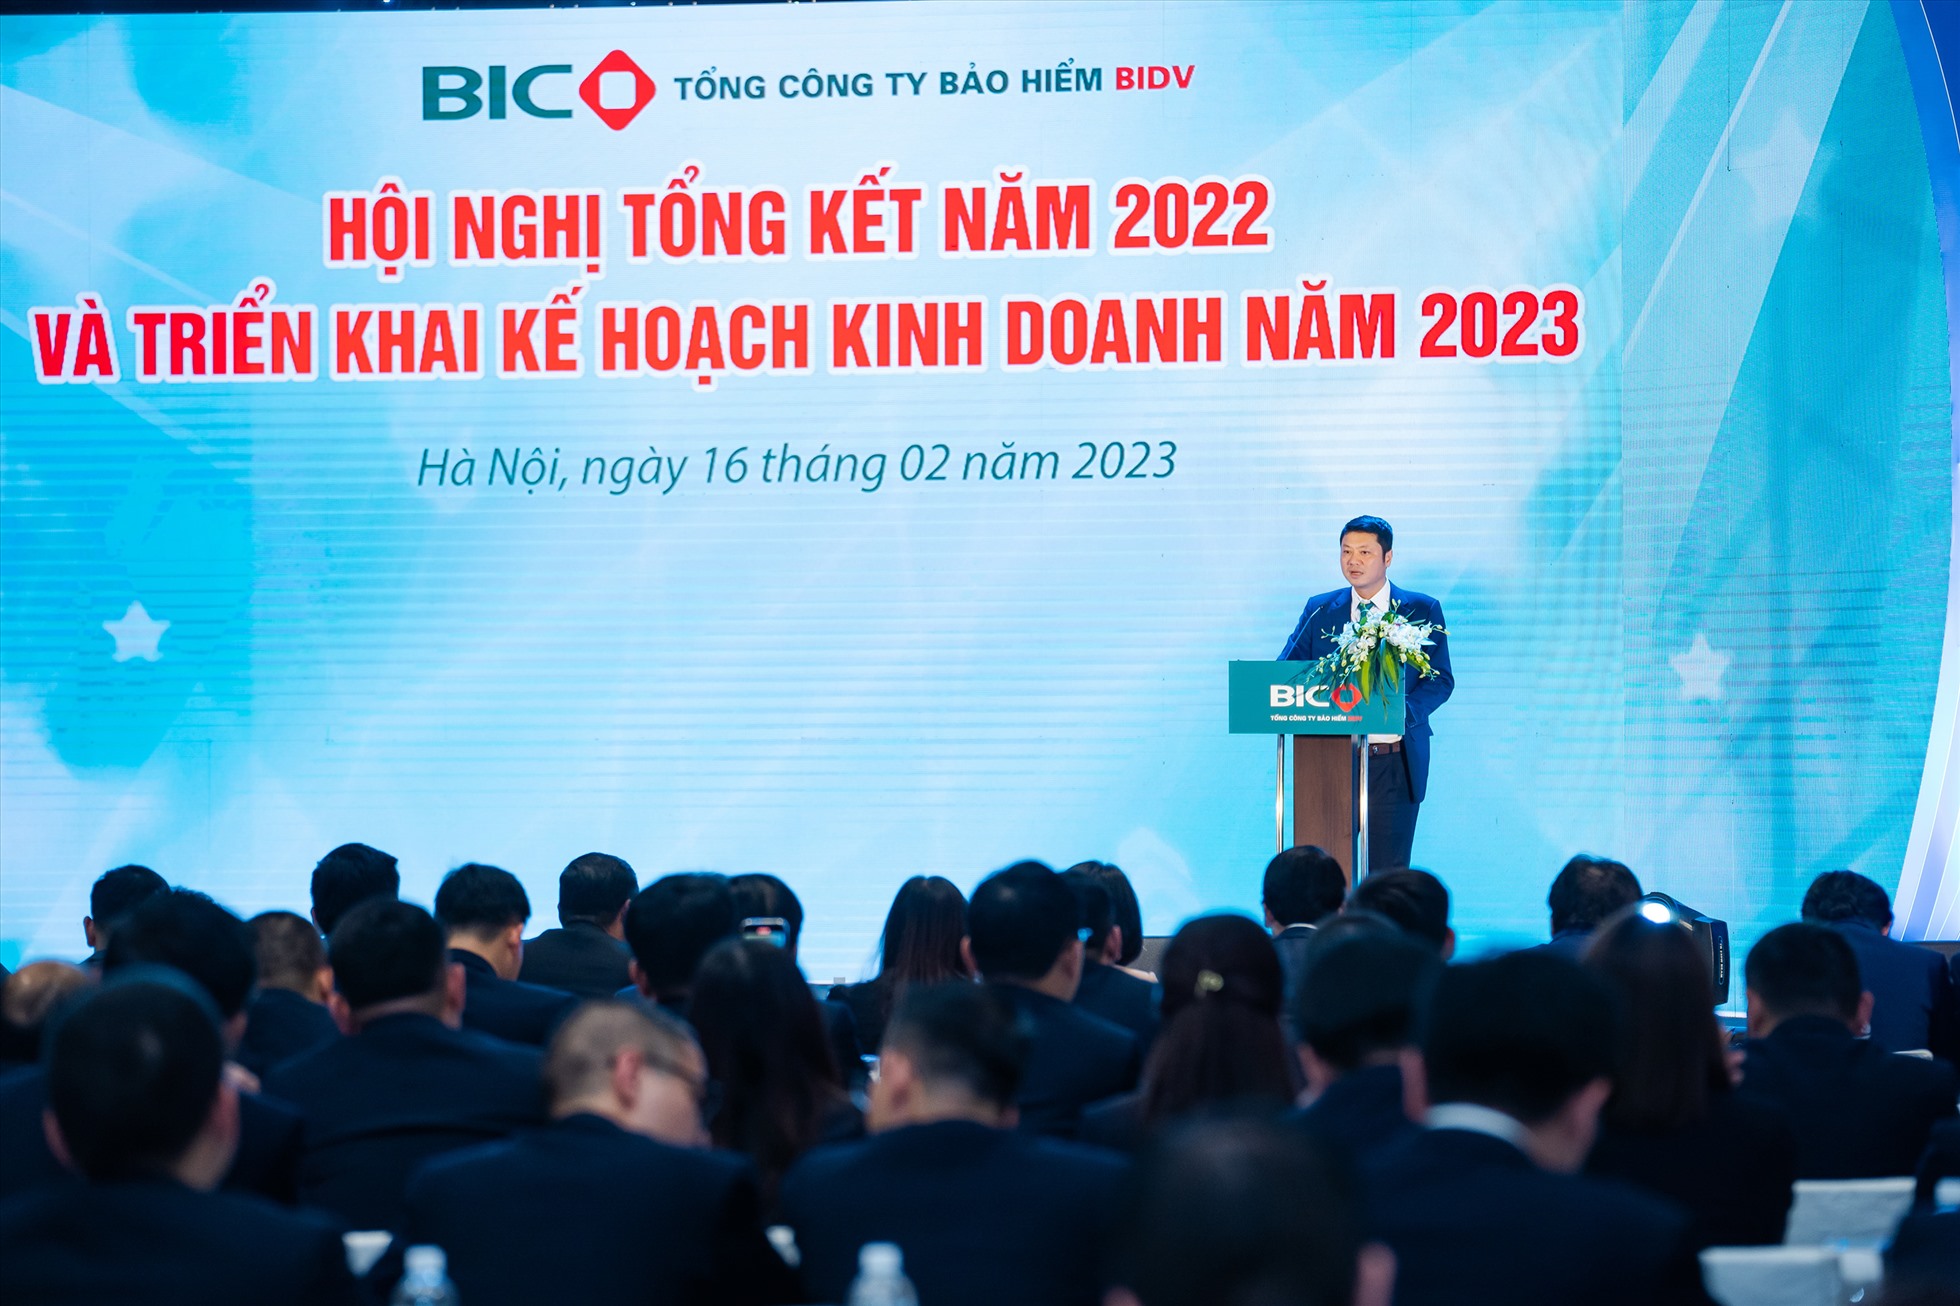 Ông Lê Ngọc Lâm - Ủy viên HĐQT, Tổng Giám đốc BIDV đánh giá cao những kết quả ấn tượng mà BIC đã đạt được trong năm 2022. Ảnh: BIC